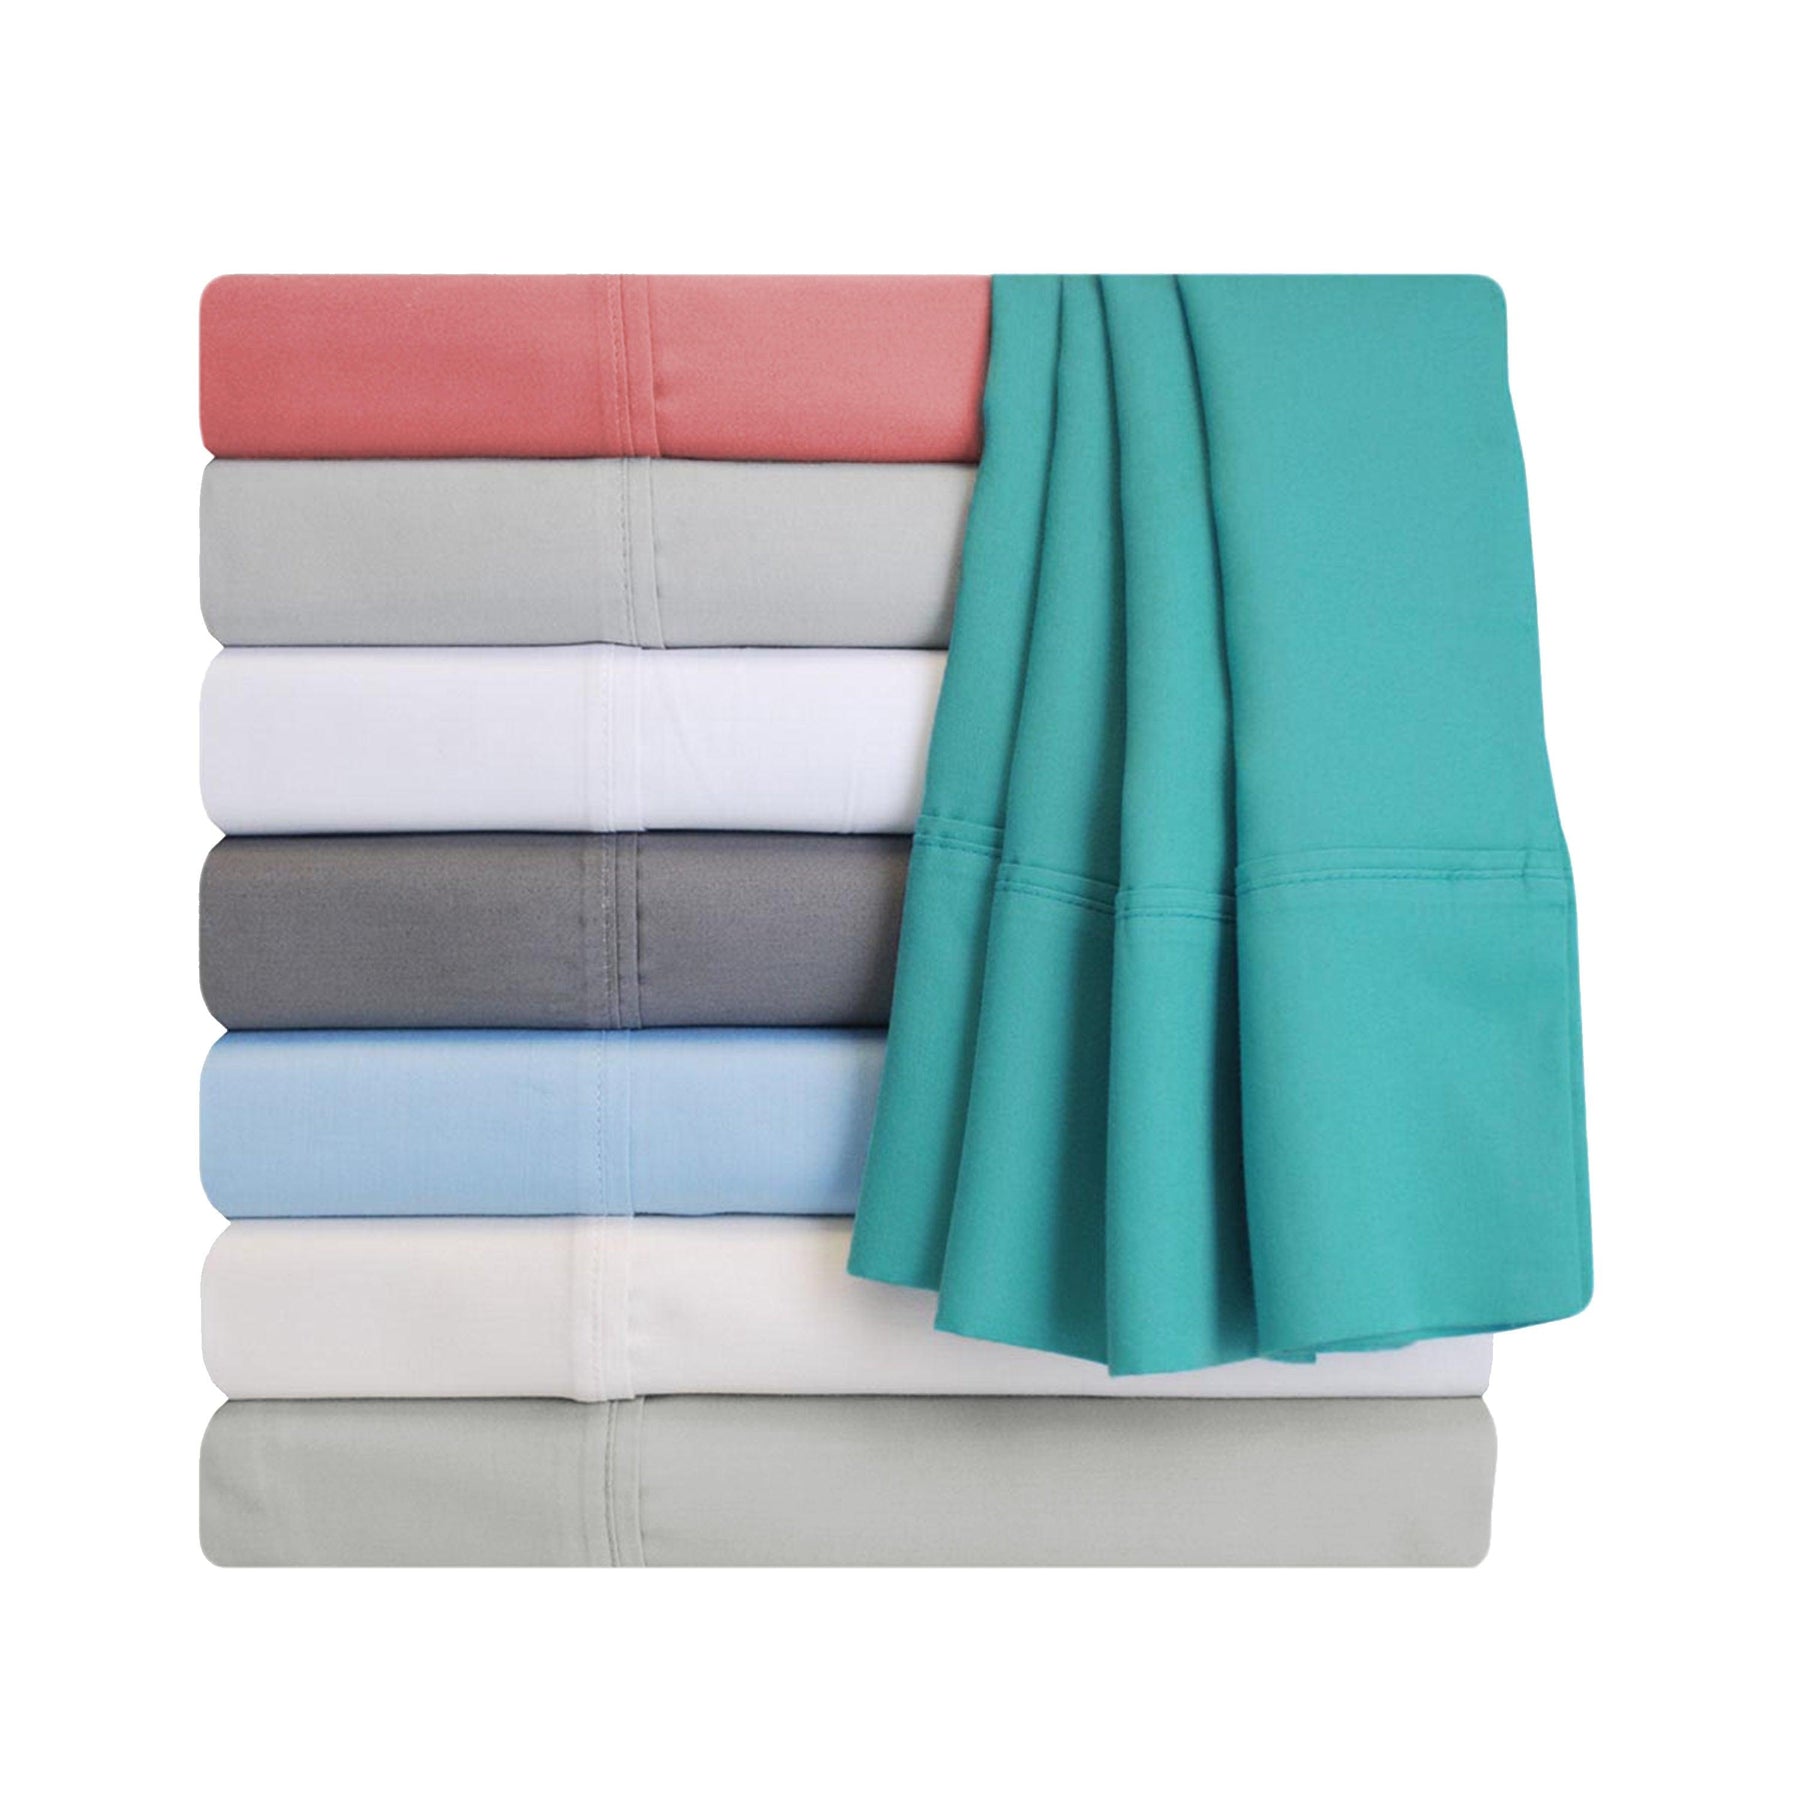 Superior Solid Count Cotton Blend Deep Pocket Sheet Set - Blush